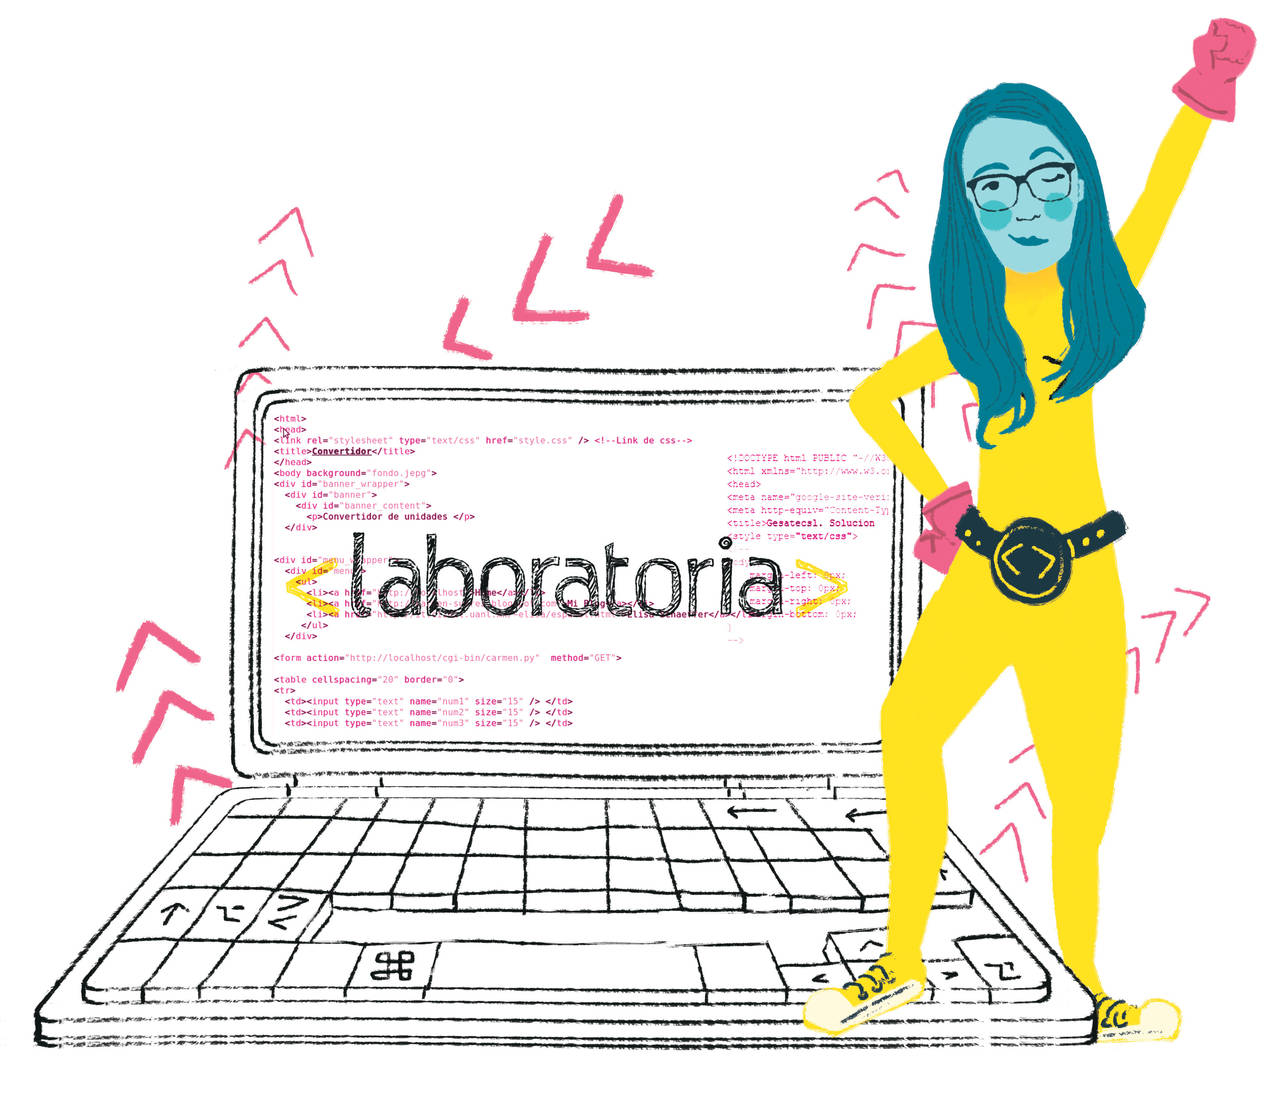 Laboratoria, un startup que capacita a mujeres para convertirse en desarrolladoras web. (EL UNIVERSAL)